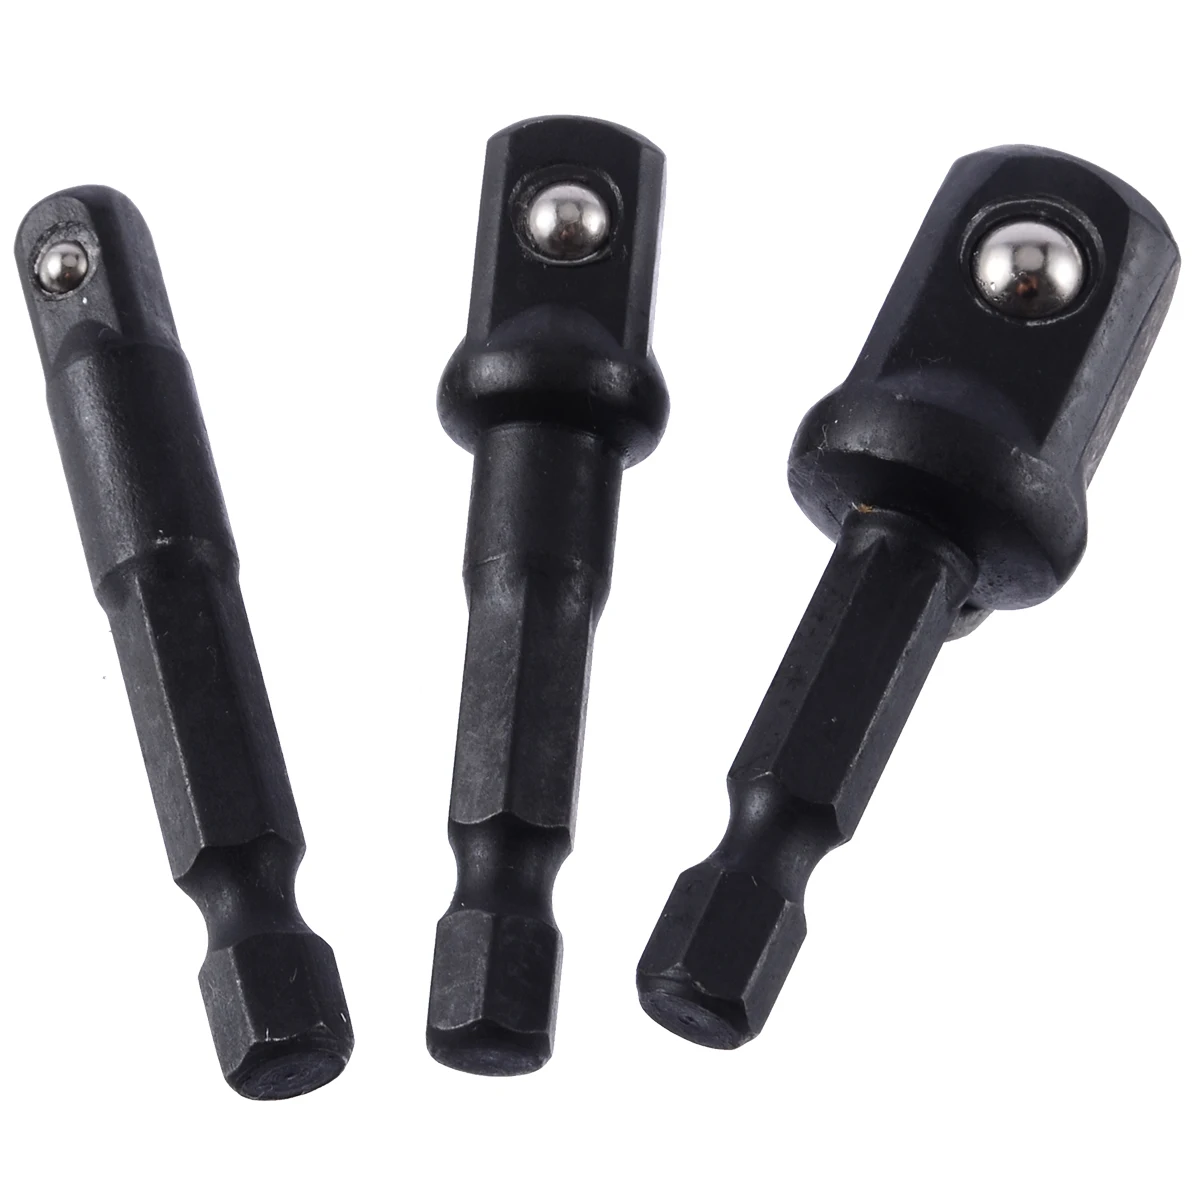 

3pcs Black Hex Socket Adapter Bits Set 1/4" 3/8" 1/2" Extension Drill Bits Hex Socket Adapter For Electric Screwdriver Tools